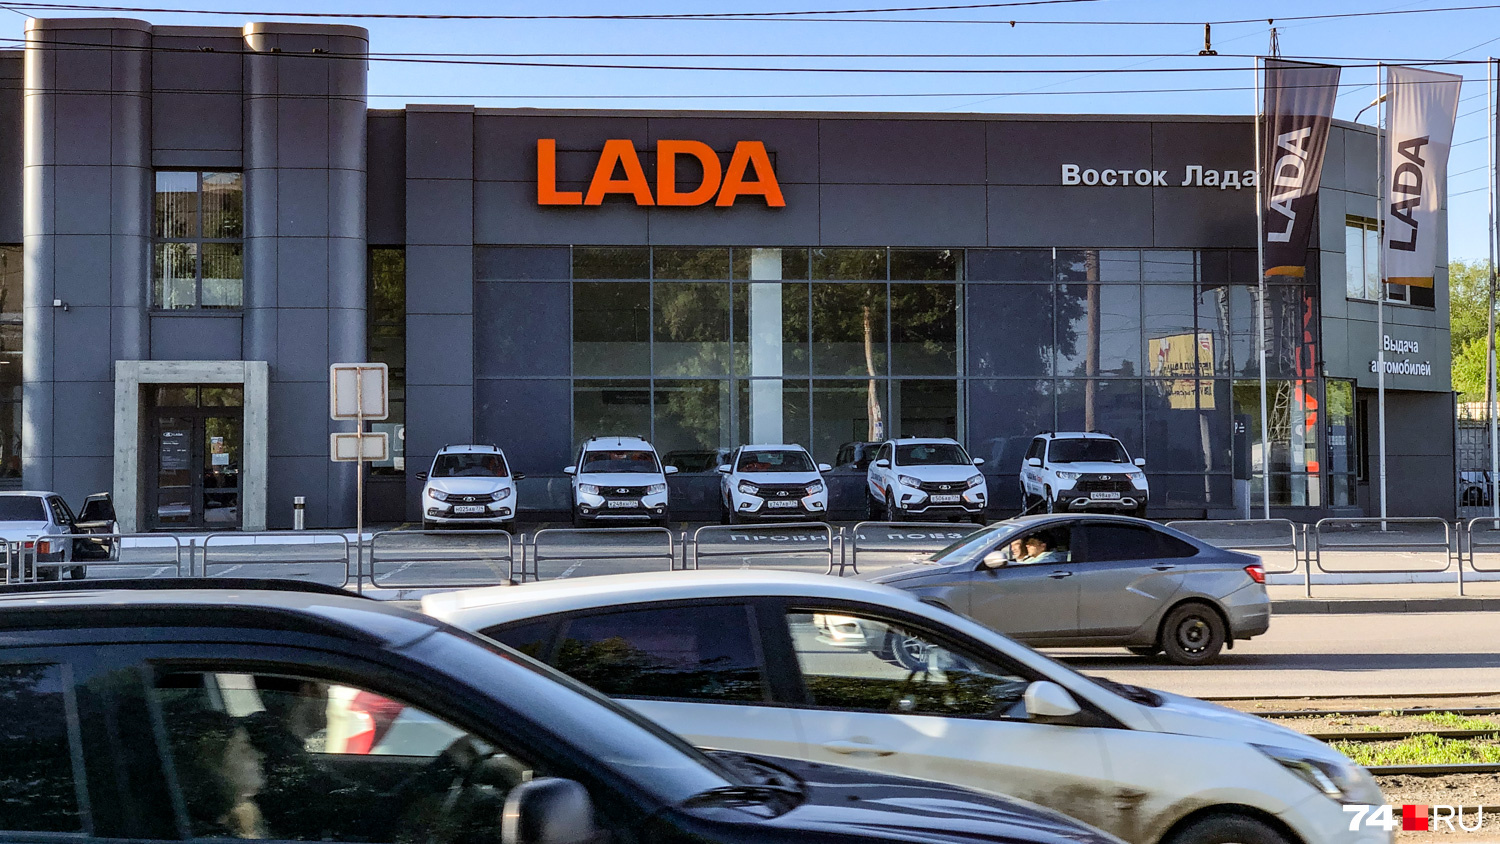 Дилеры Lada распродают остатки машин с кондиционерами. Когда появятся новые поступления таких комплектаций — пока неясно